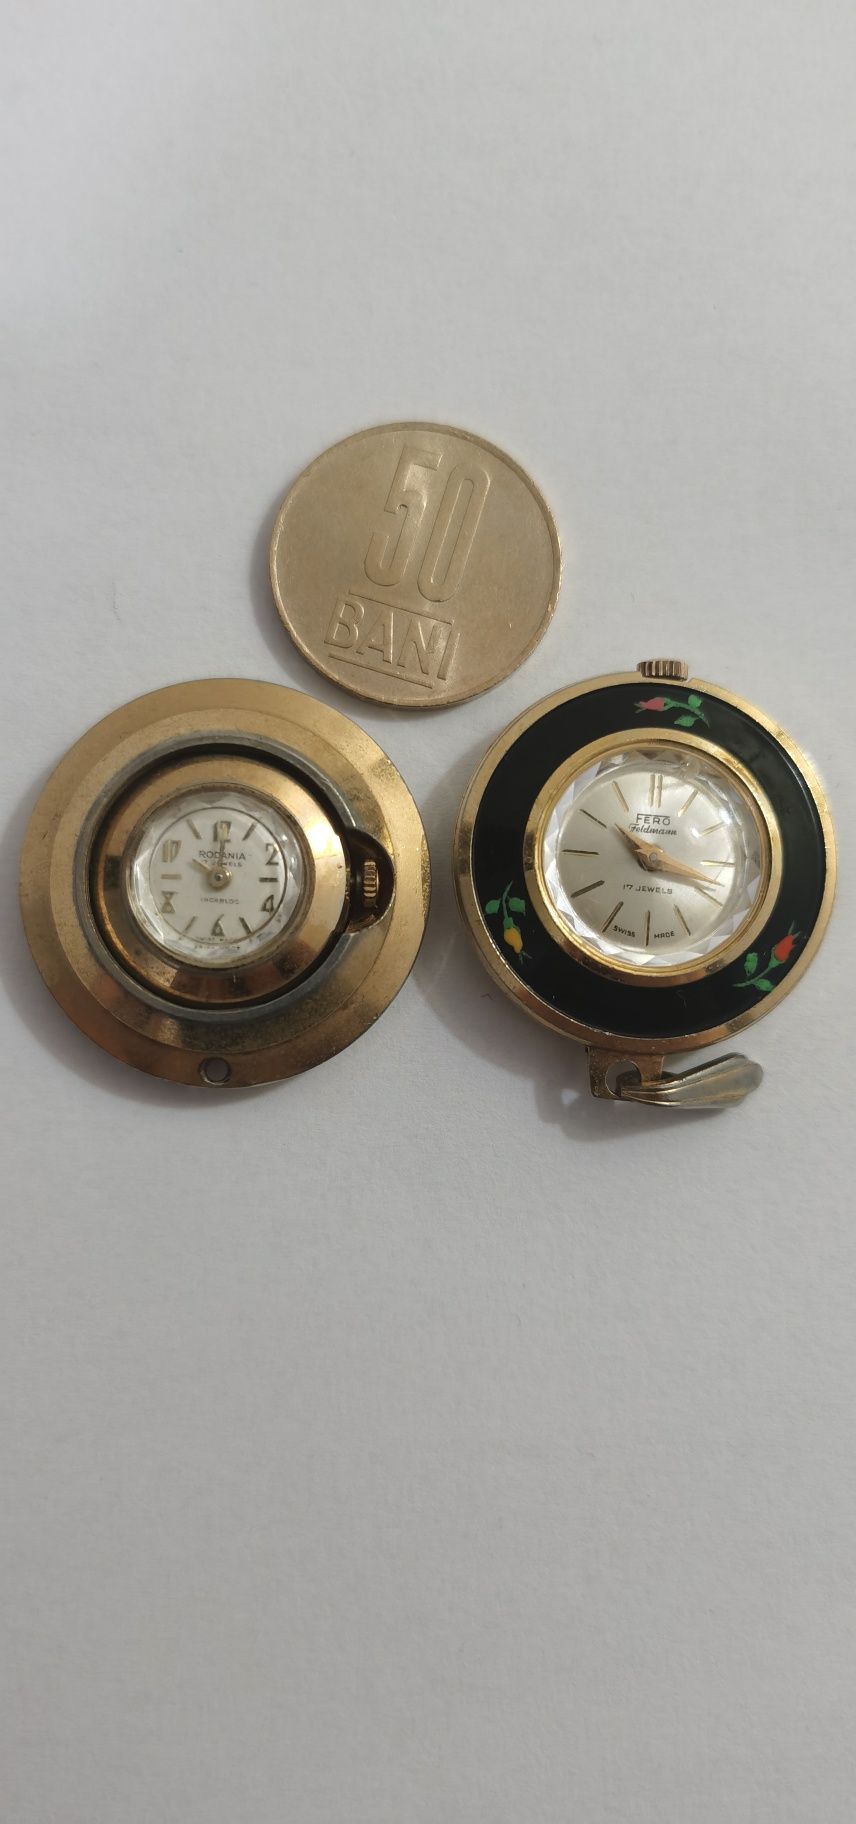 Ceasuri mecanice vechi de colecție.